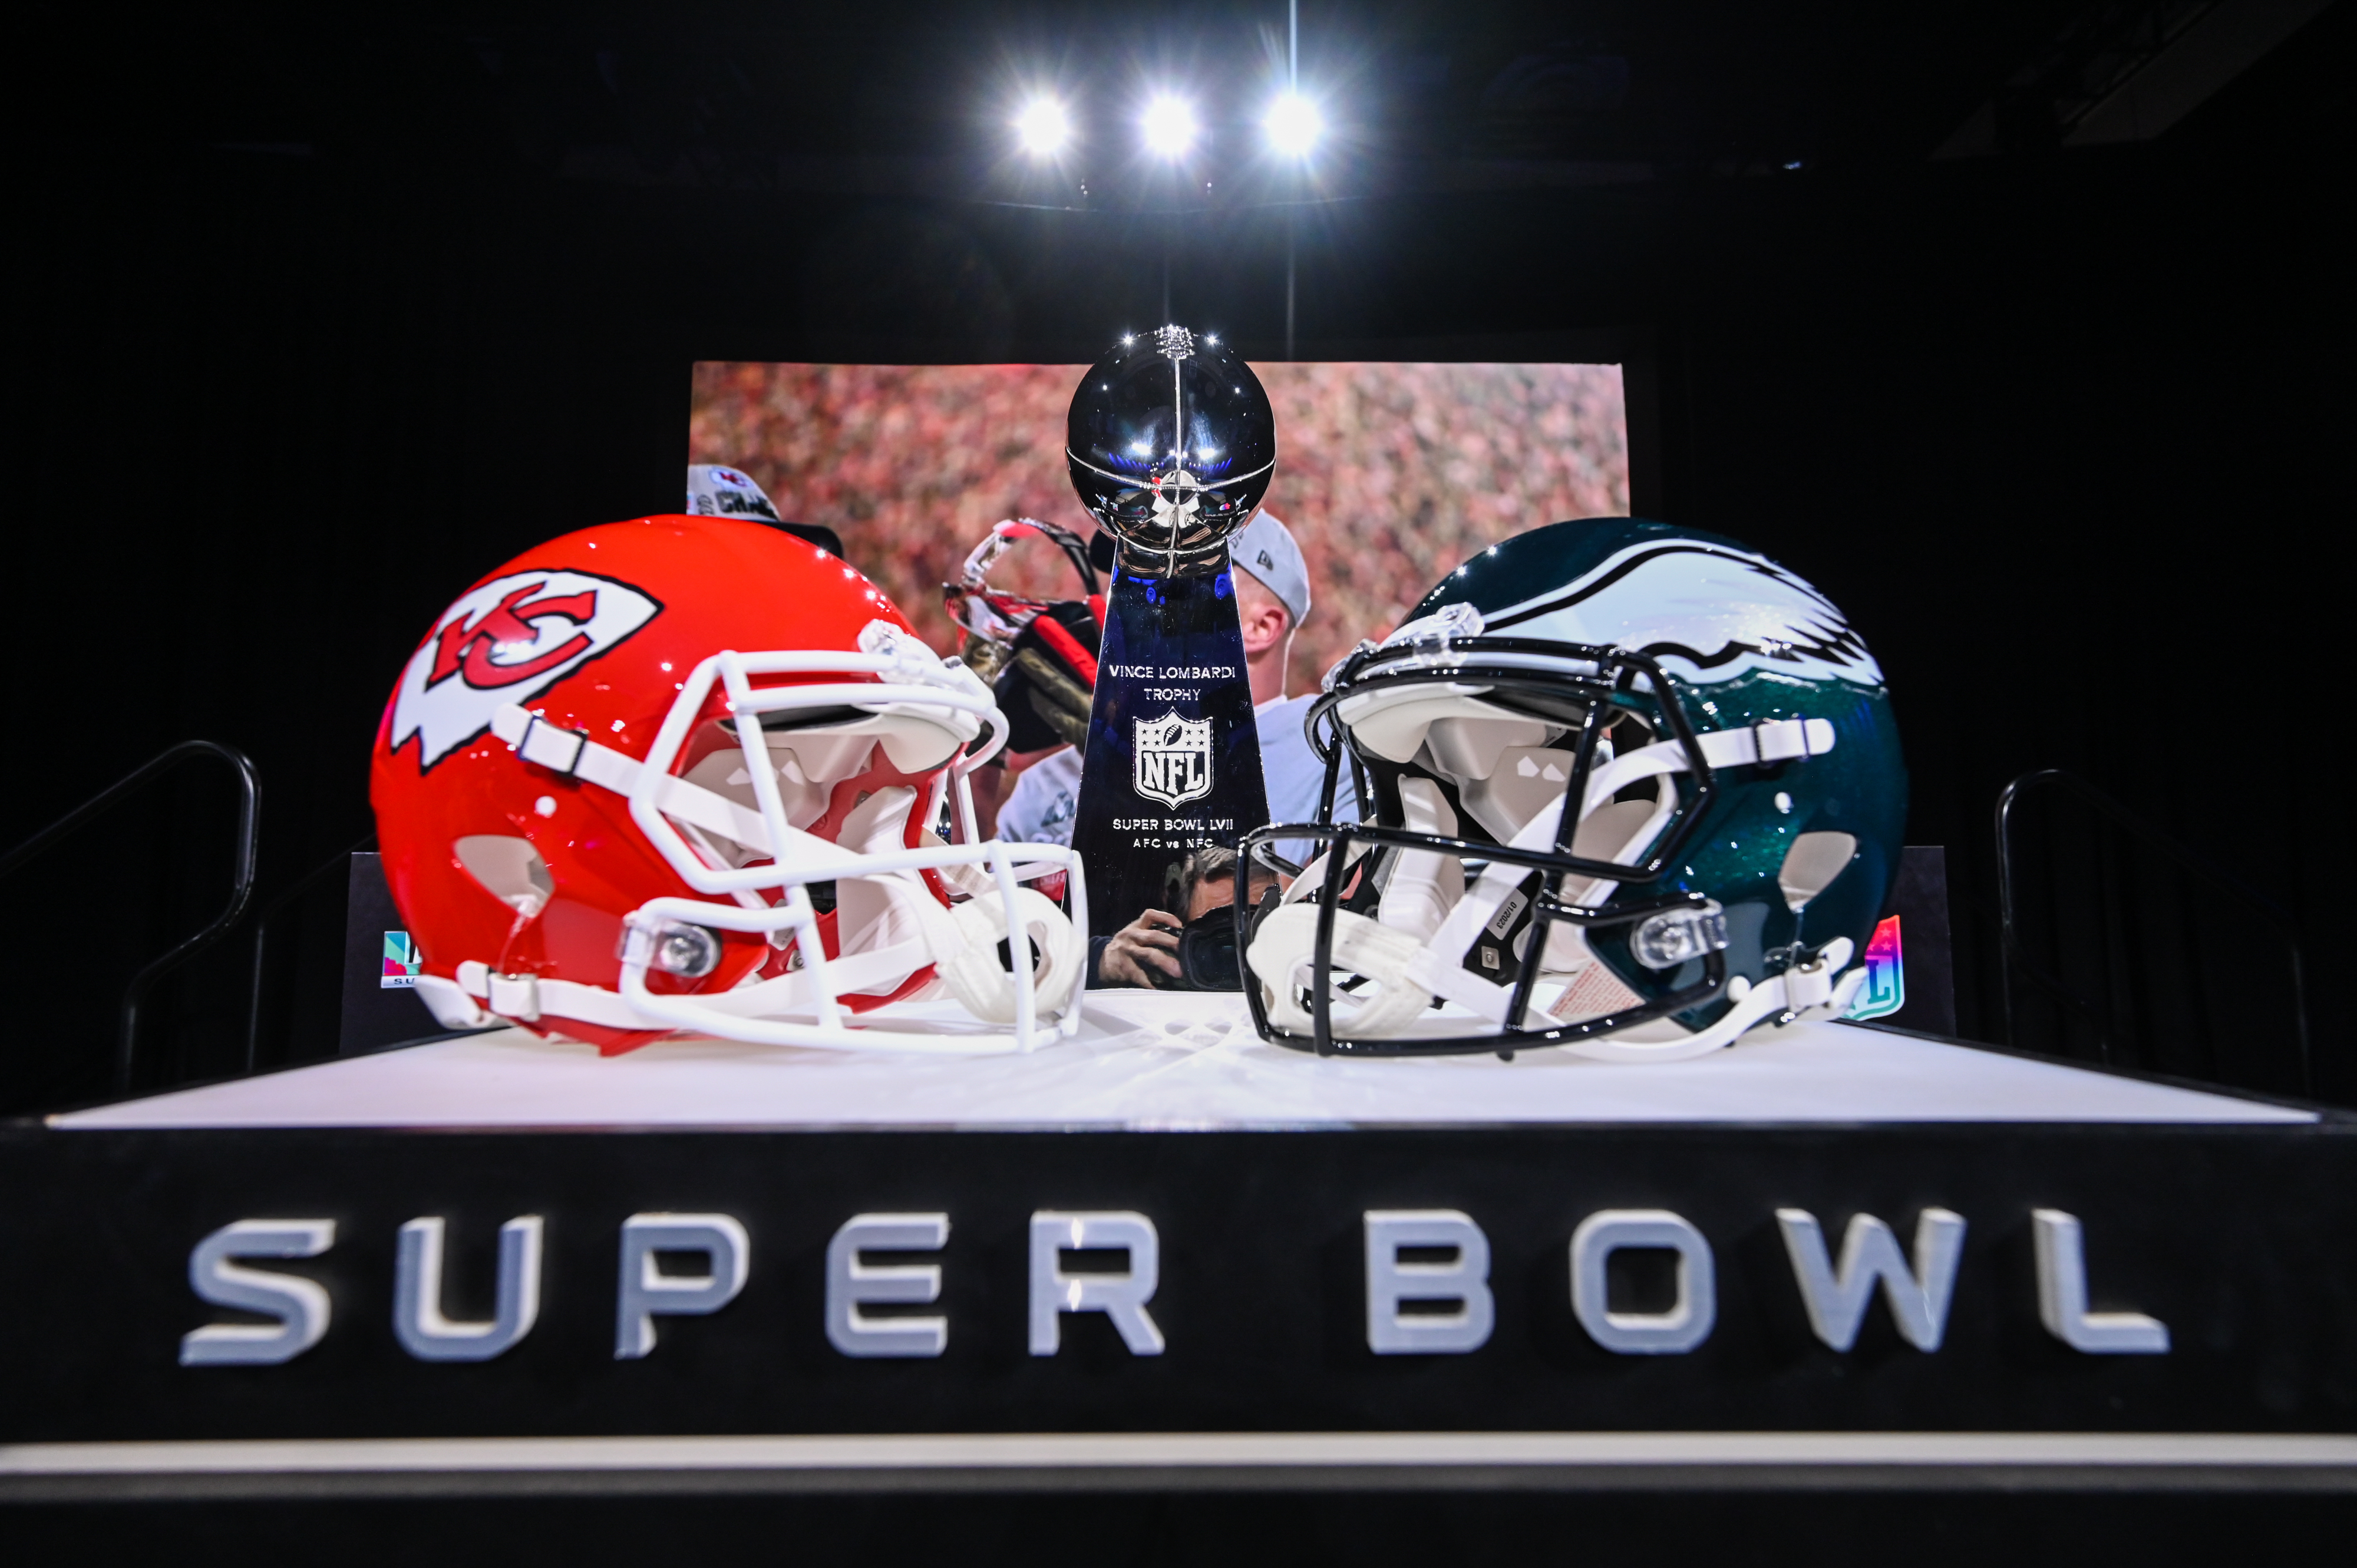 A világ legértékesebb tévés eseménye: vasárnap jön a Super Bowl! - Blikk